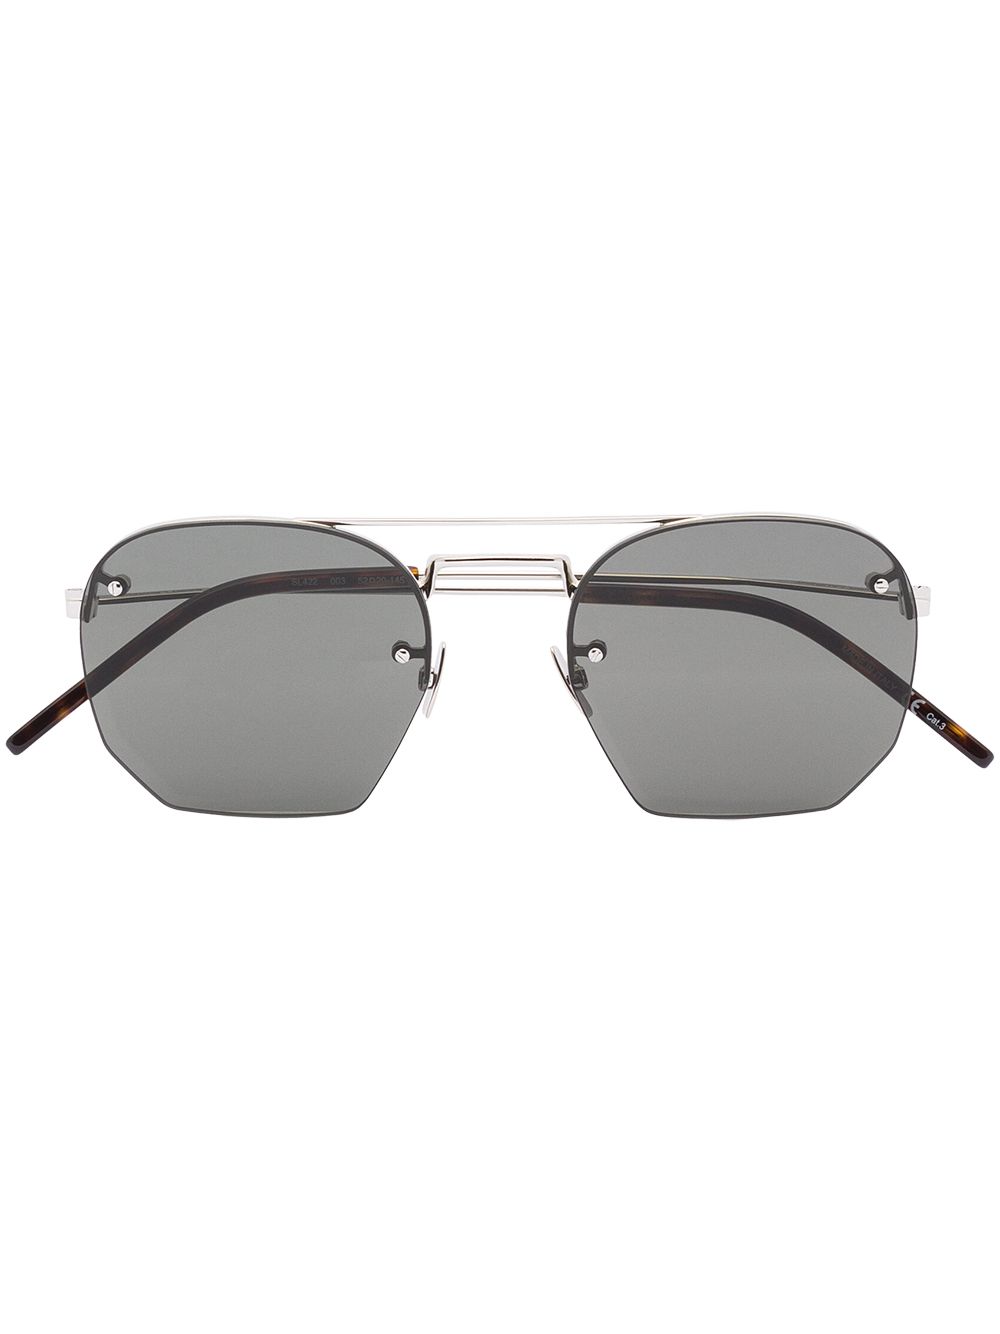 фото Saint laurent eyewear солнцезащитные очки sl422 в геометричной оправе